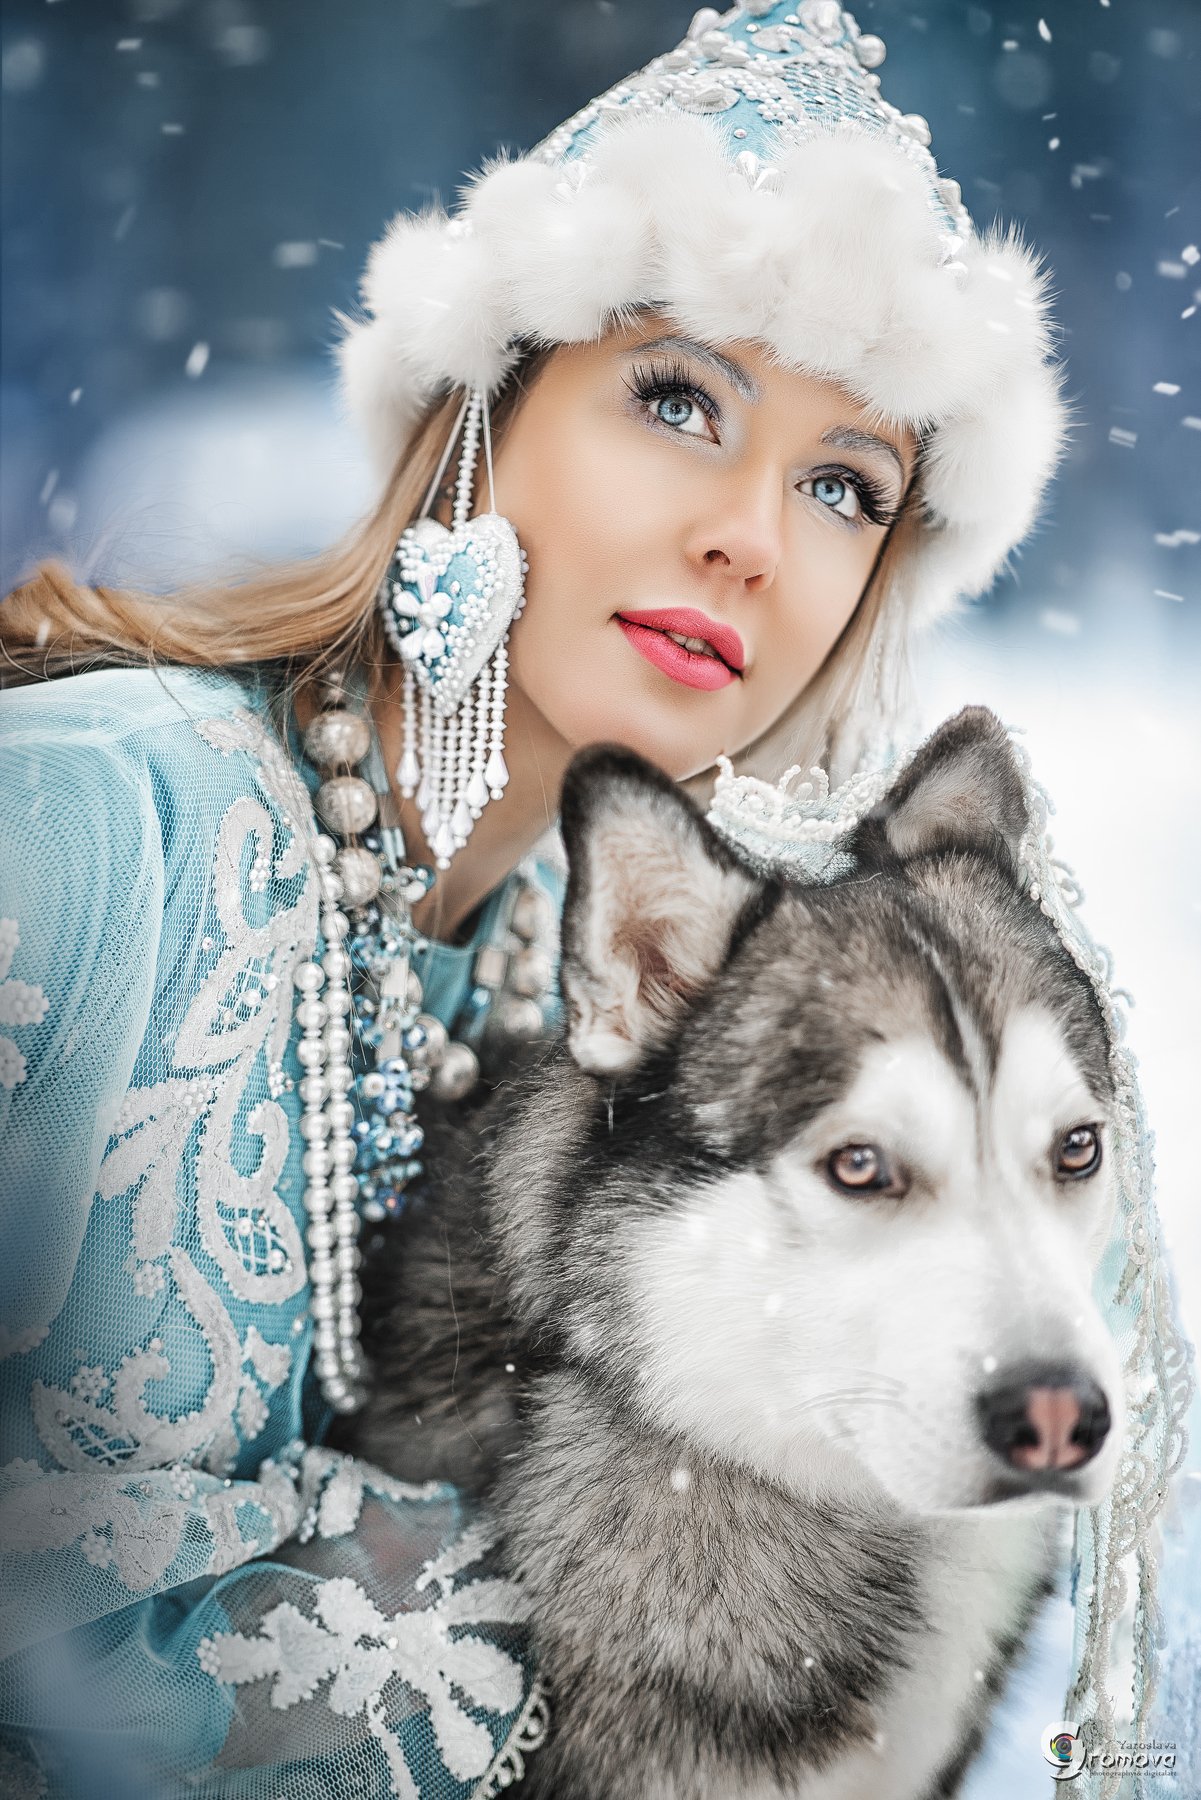 девушка, снегурочка, Акшакар, сказка, хаски, волк, зима, новый год, снег, портрет, Ярослава Громова